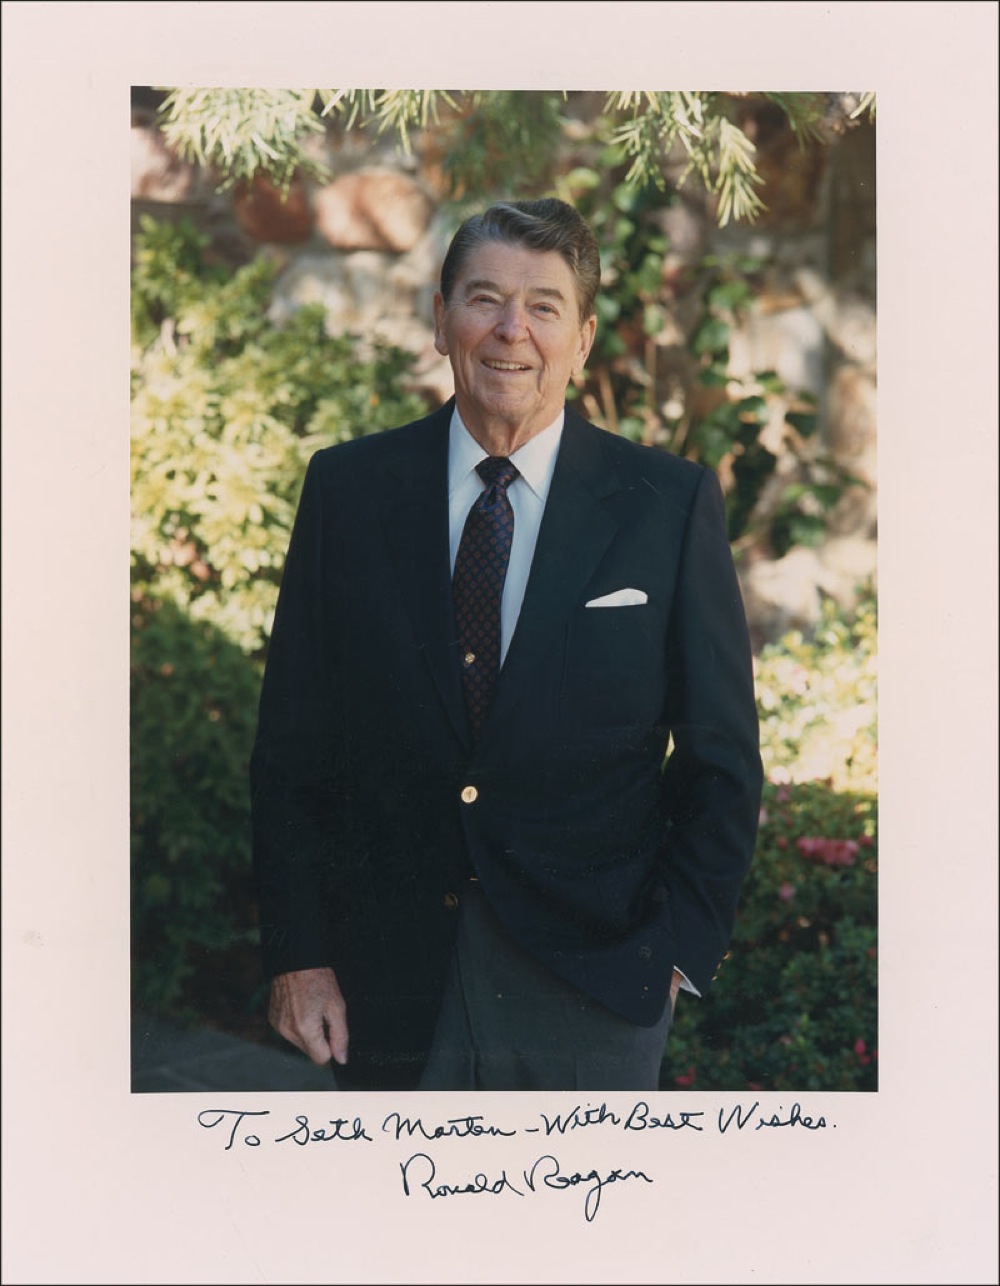 Lot #125 Ronald Reagan